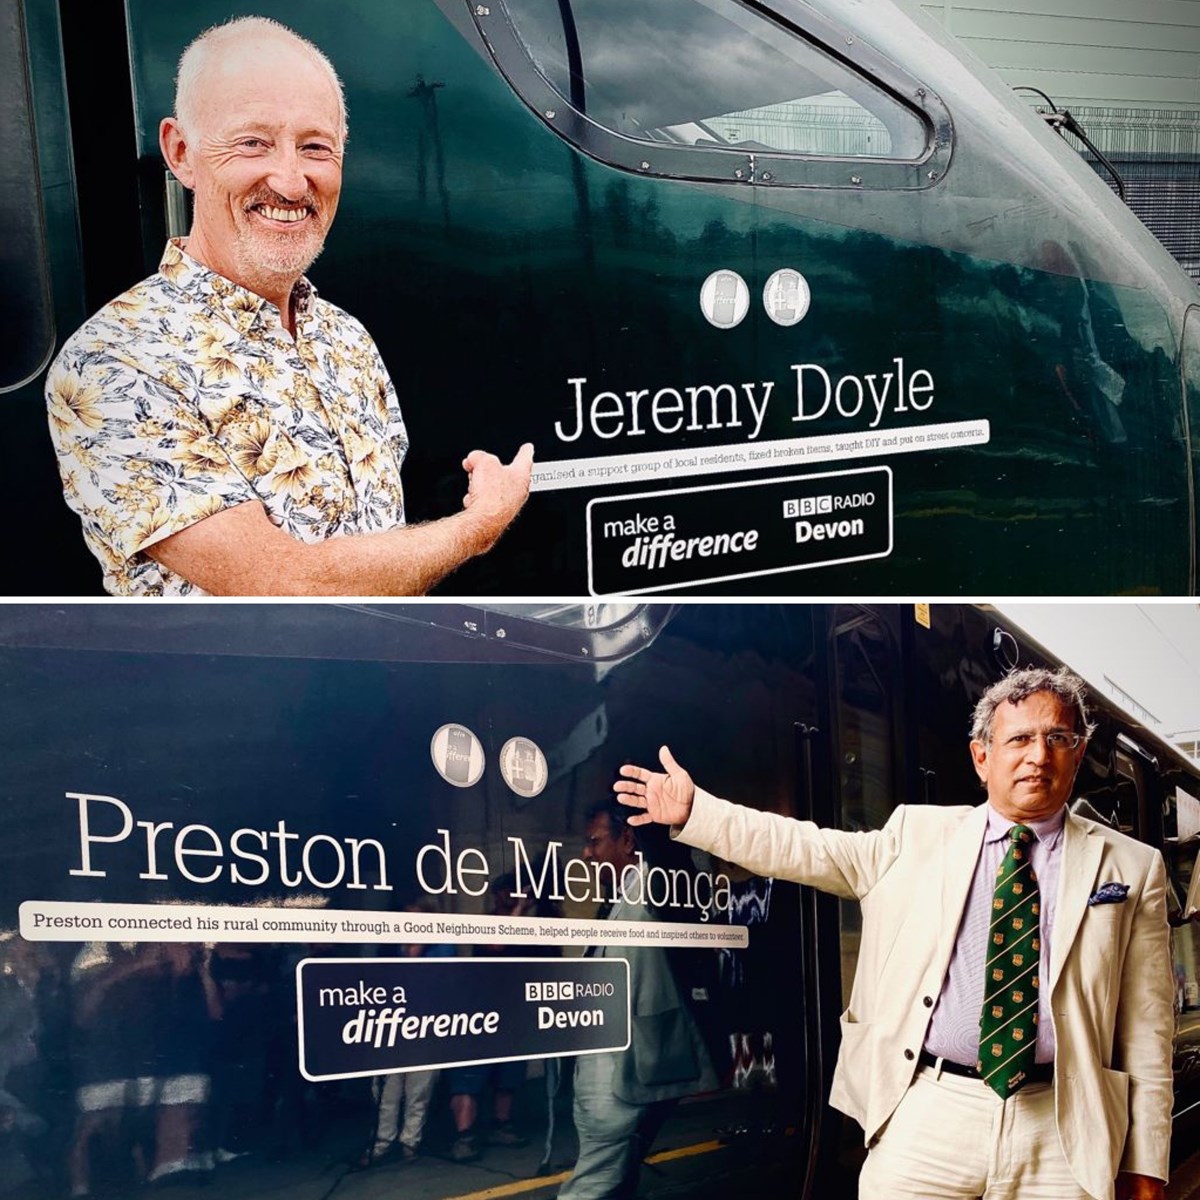 Devon BBC Make A Difference Superstars Jeremy Doyle and Preston de Mendonca